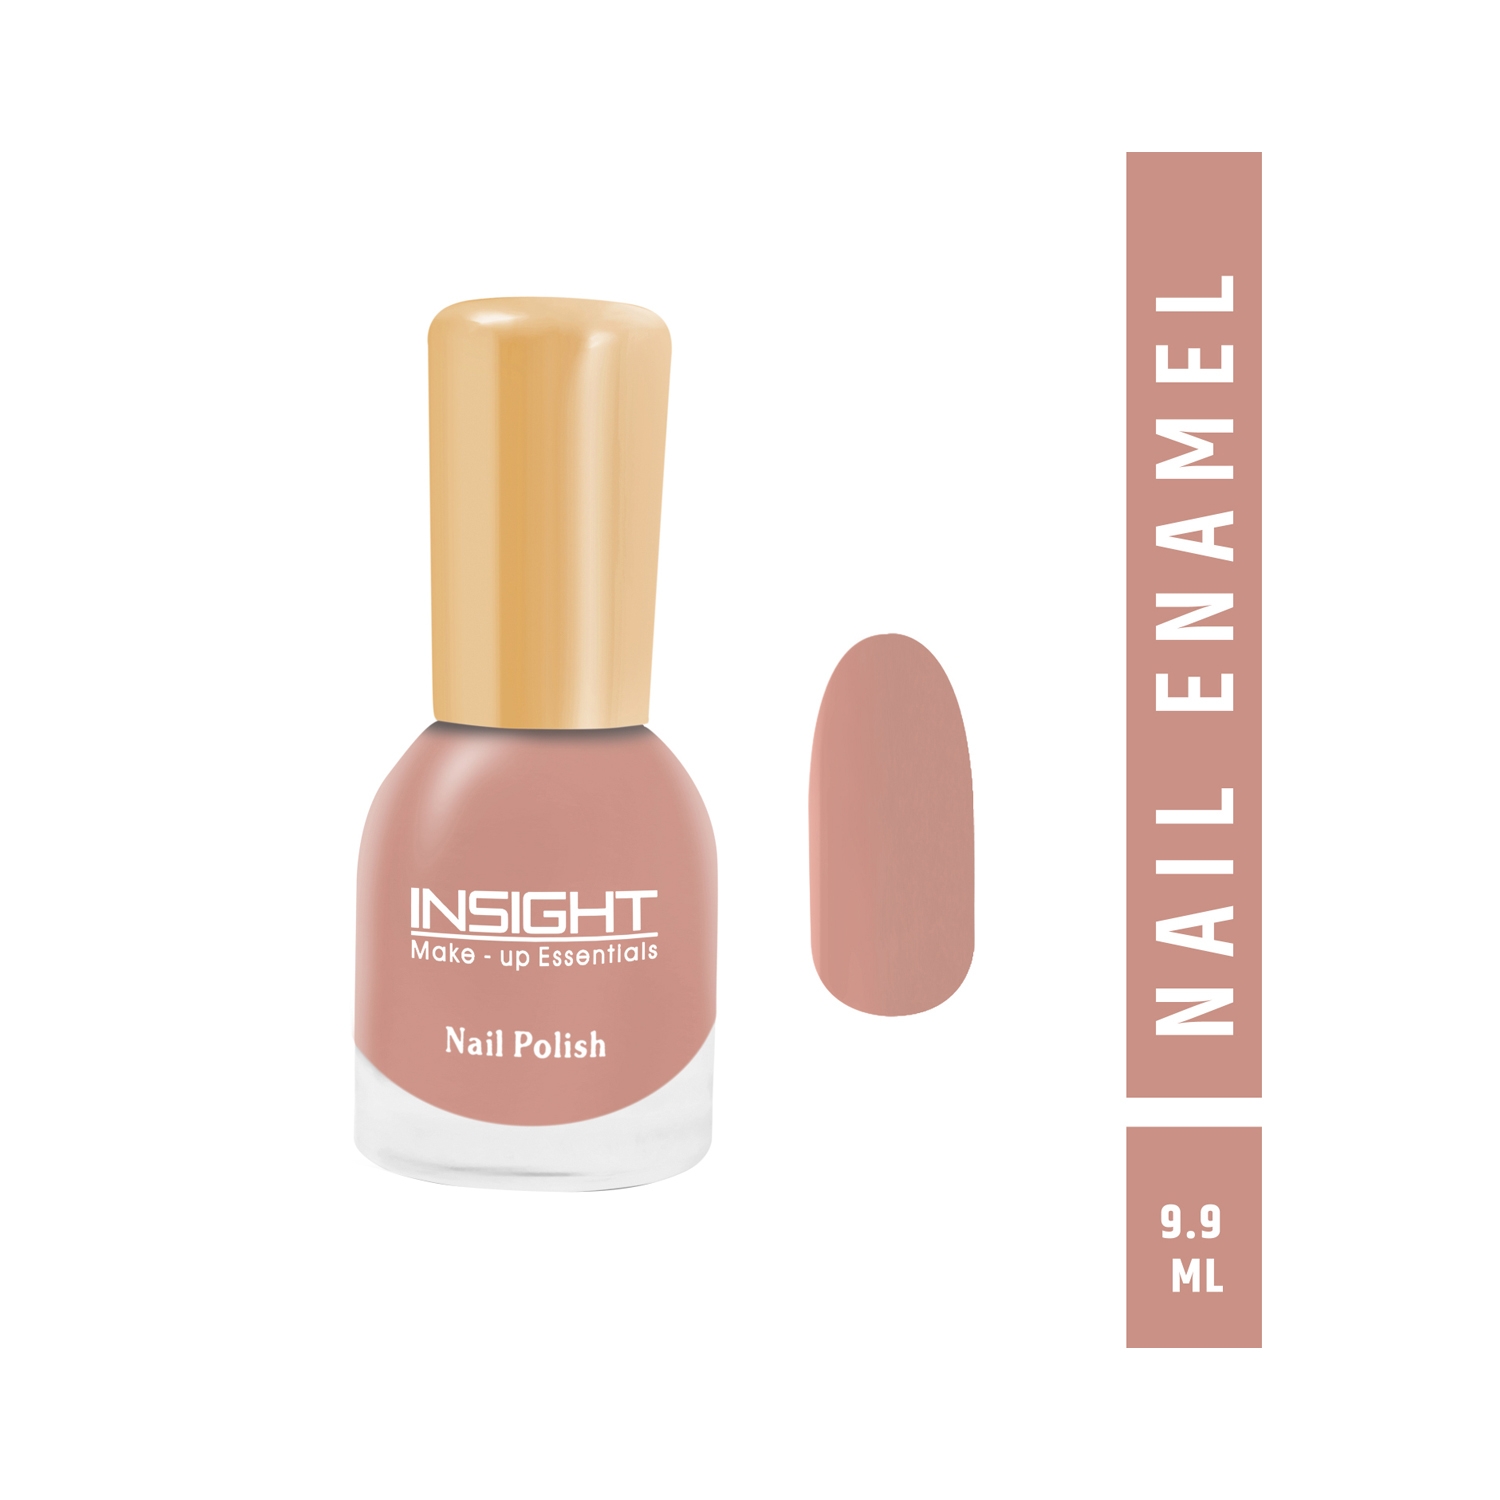 Insight Cosmetics Nail Polish - 53 Shade (9.9ml)